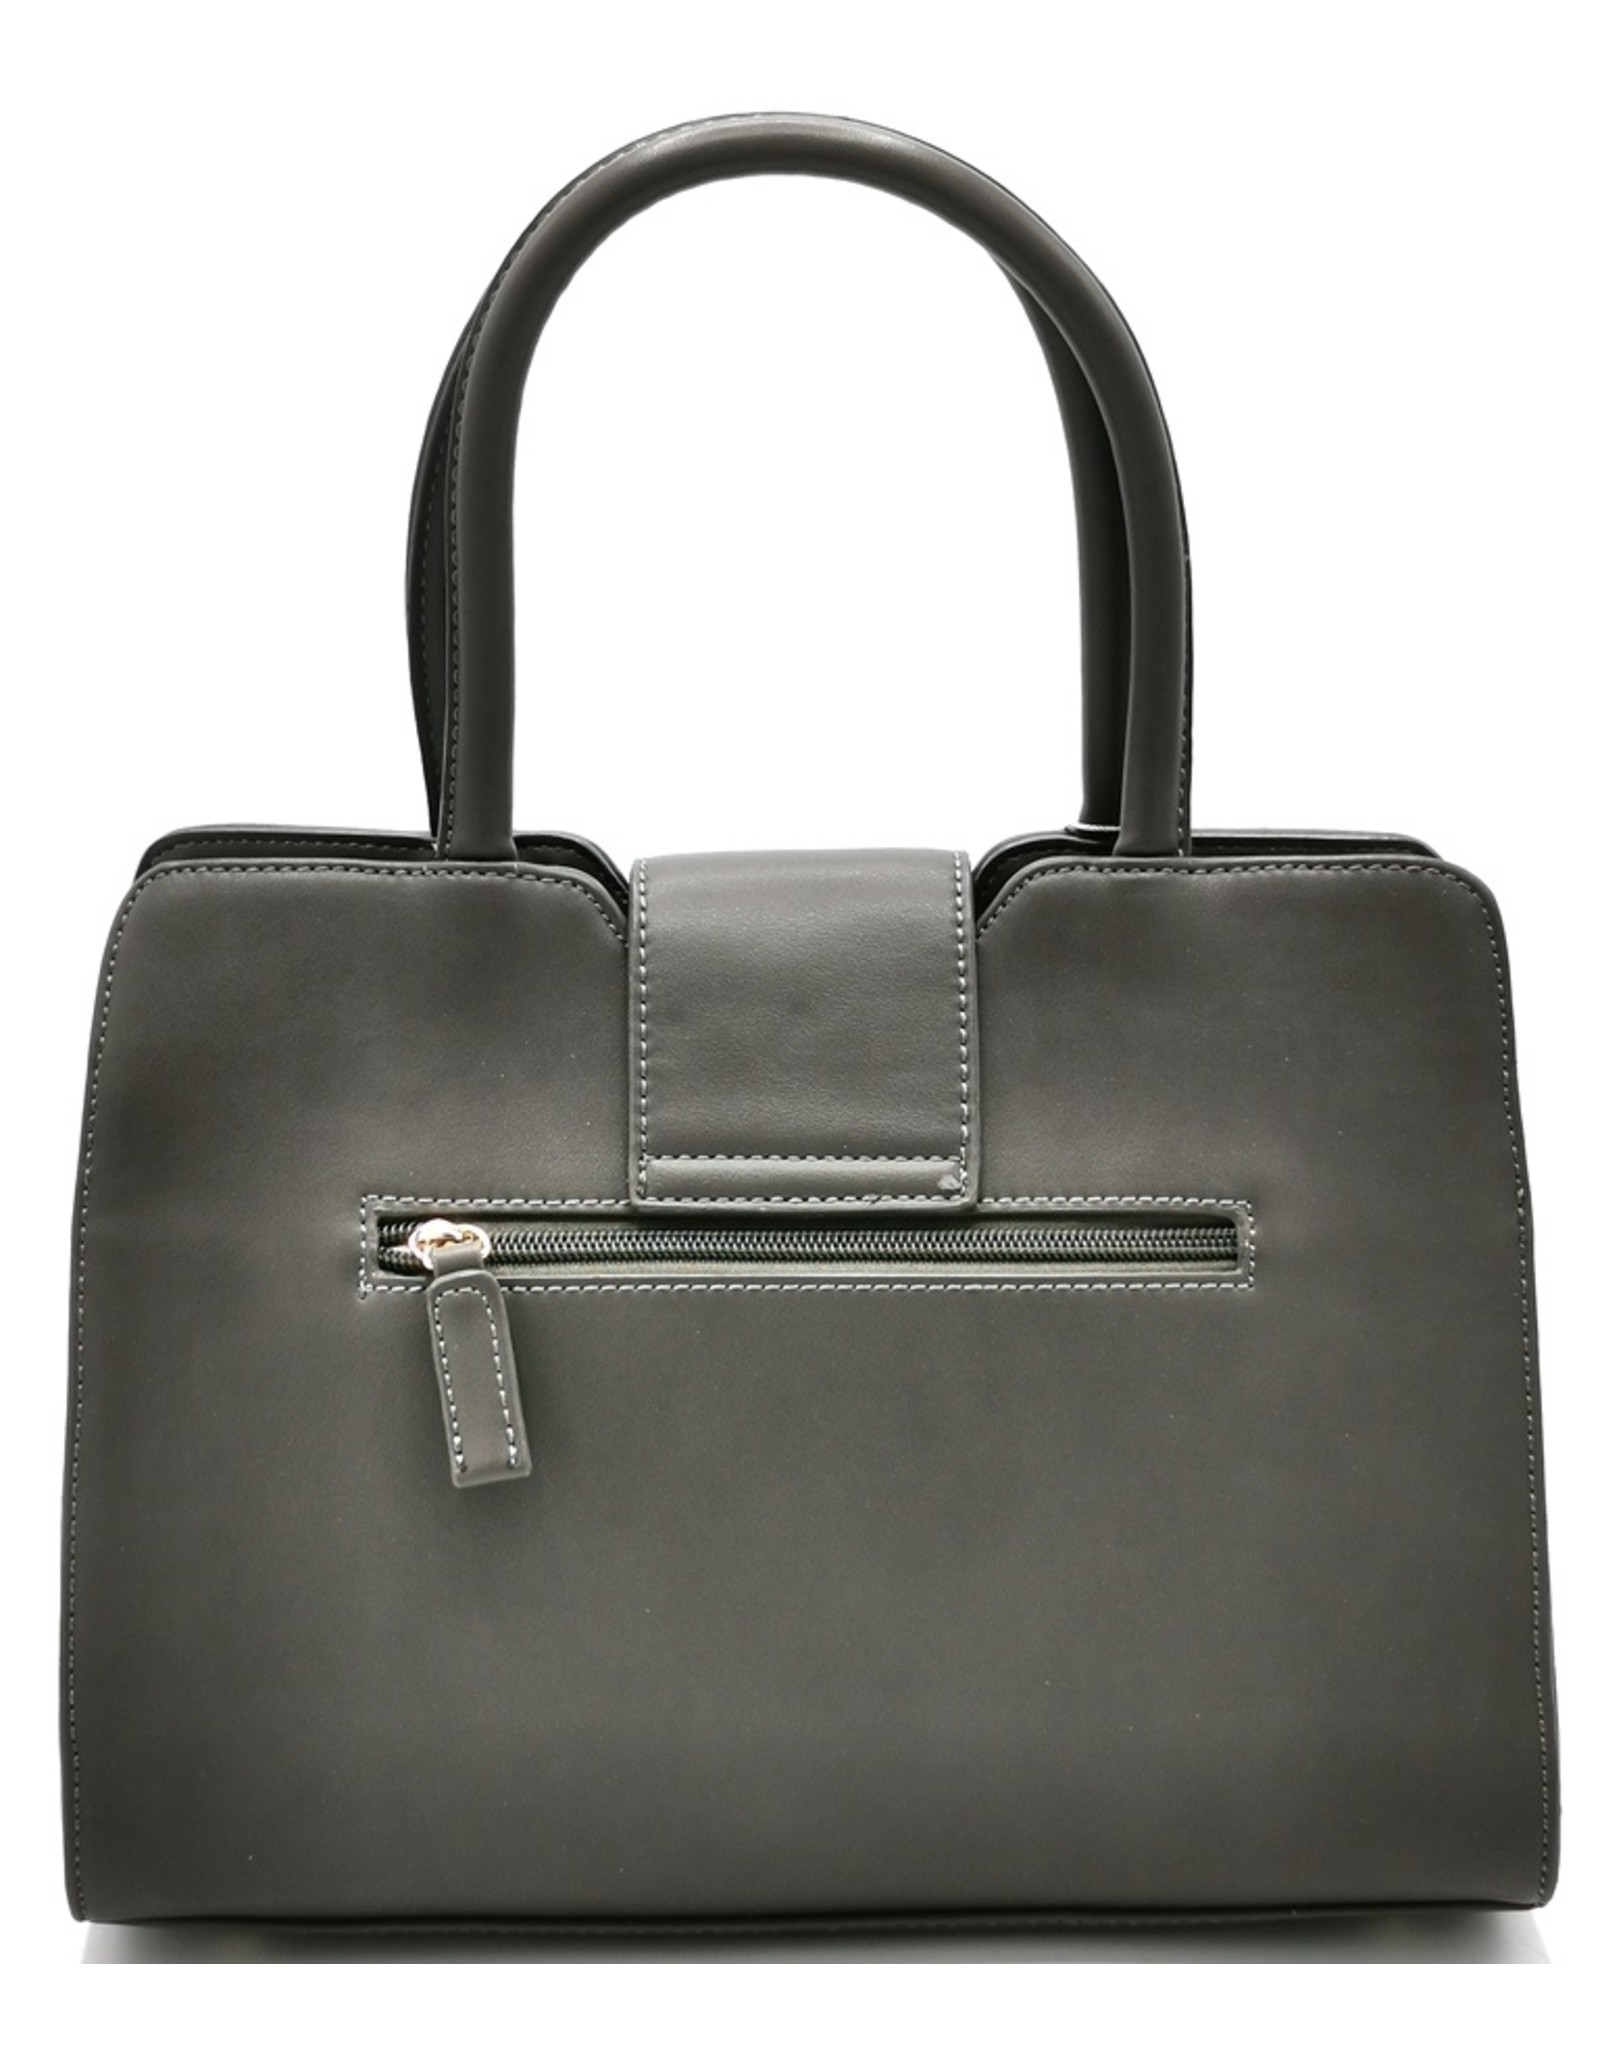 David Jones Fashion bags - David Jones Handbag Grey